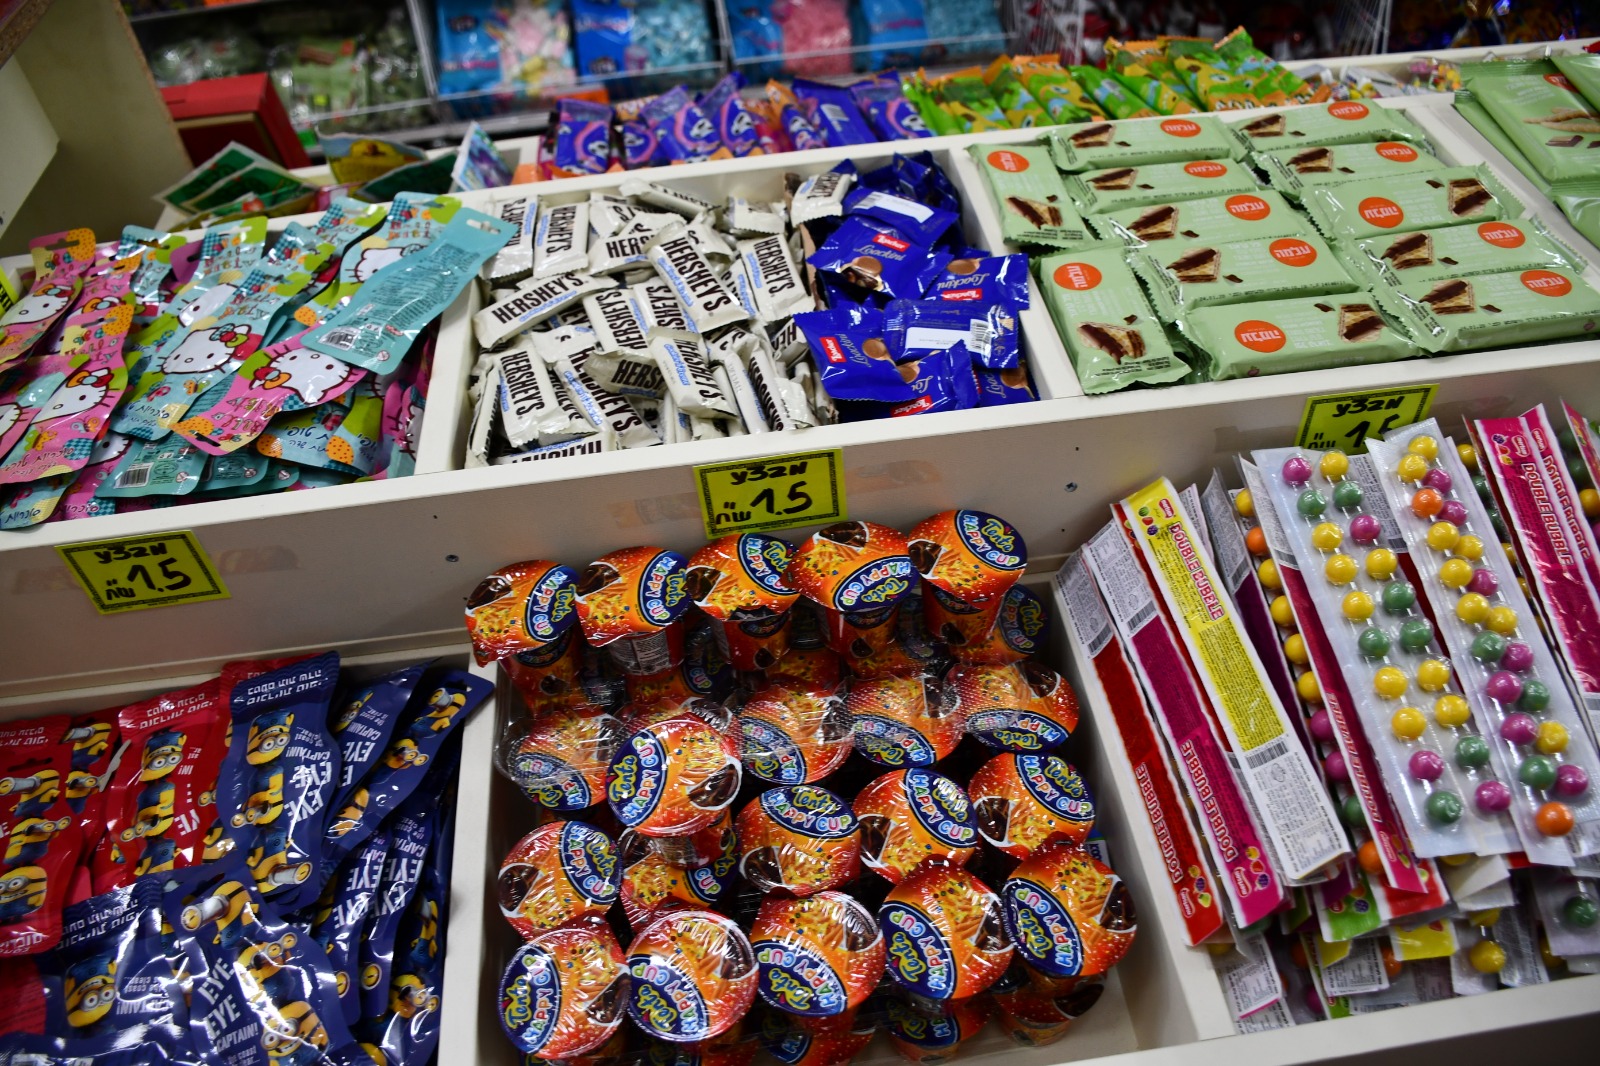  حلويات وهدايا للمناسبات وأعياد الميلاد بأسعار مميزة لدى محل واحد وعشرين شيكل بيافا